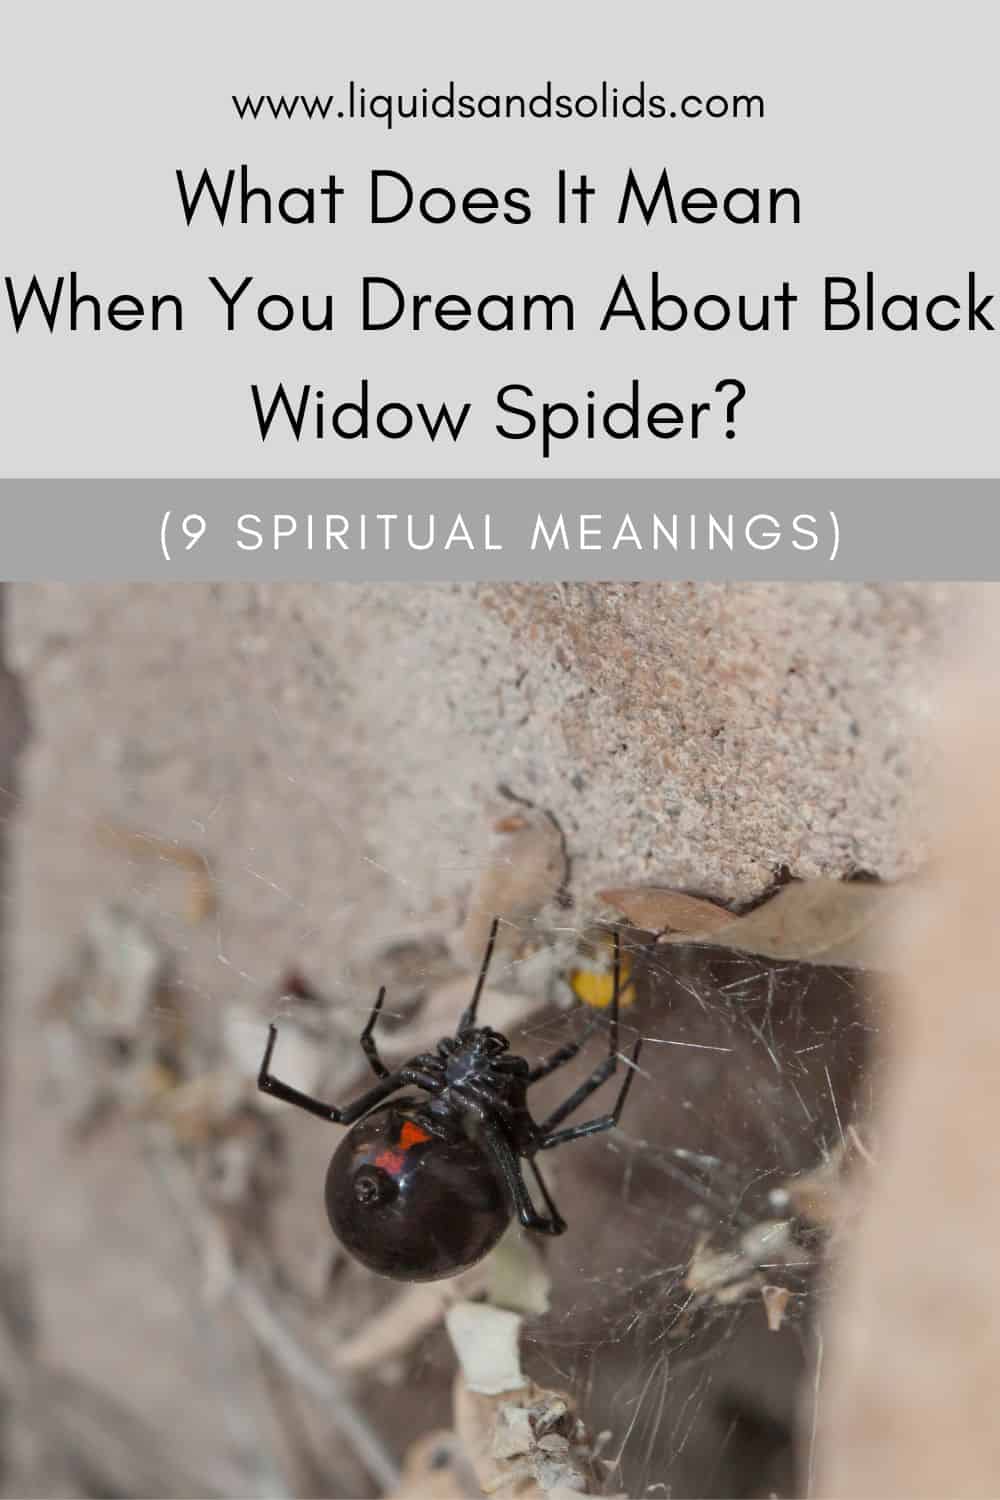  ماذا يعني عندما تحلم عنكبوت الأرملة السوداء؟ (9 معاني روحية)